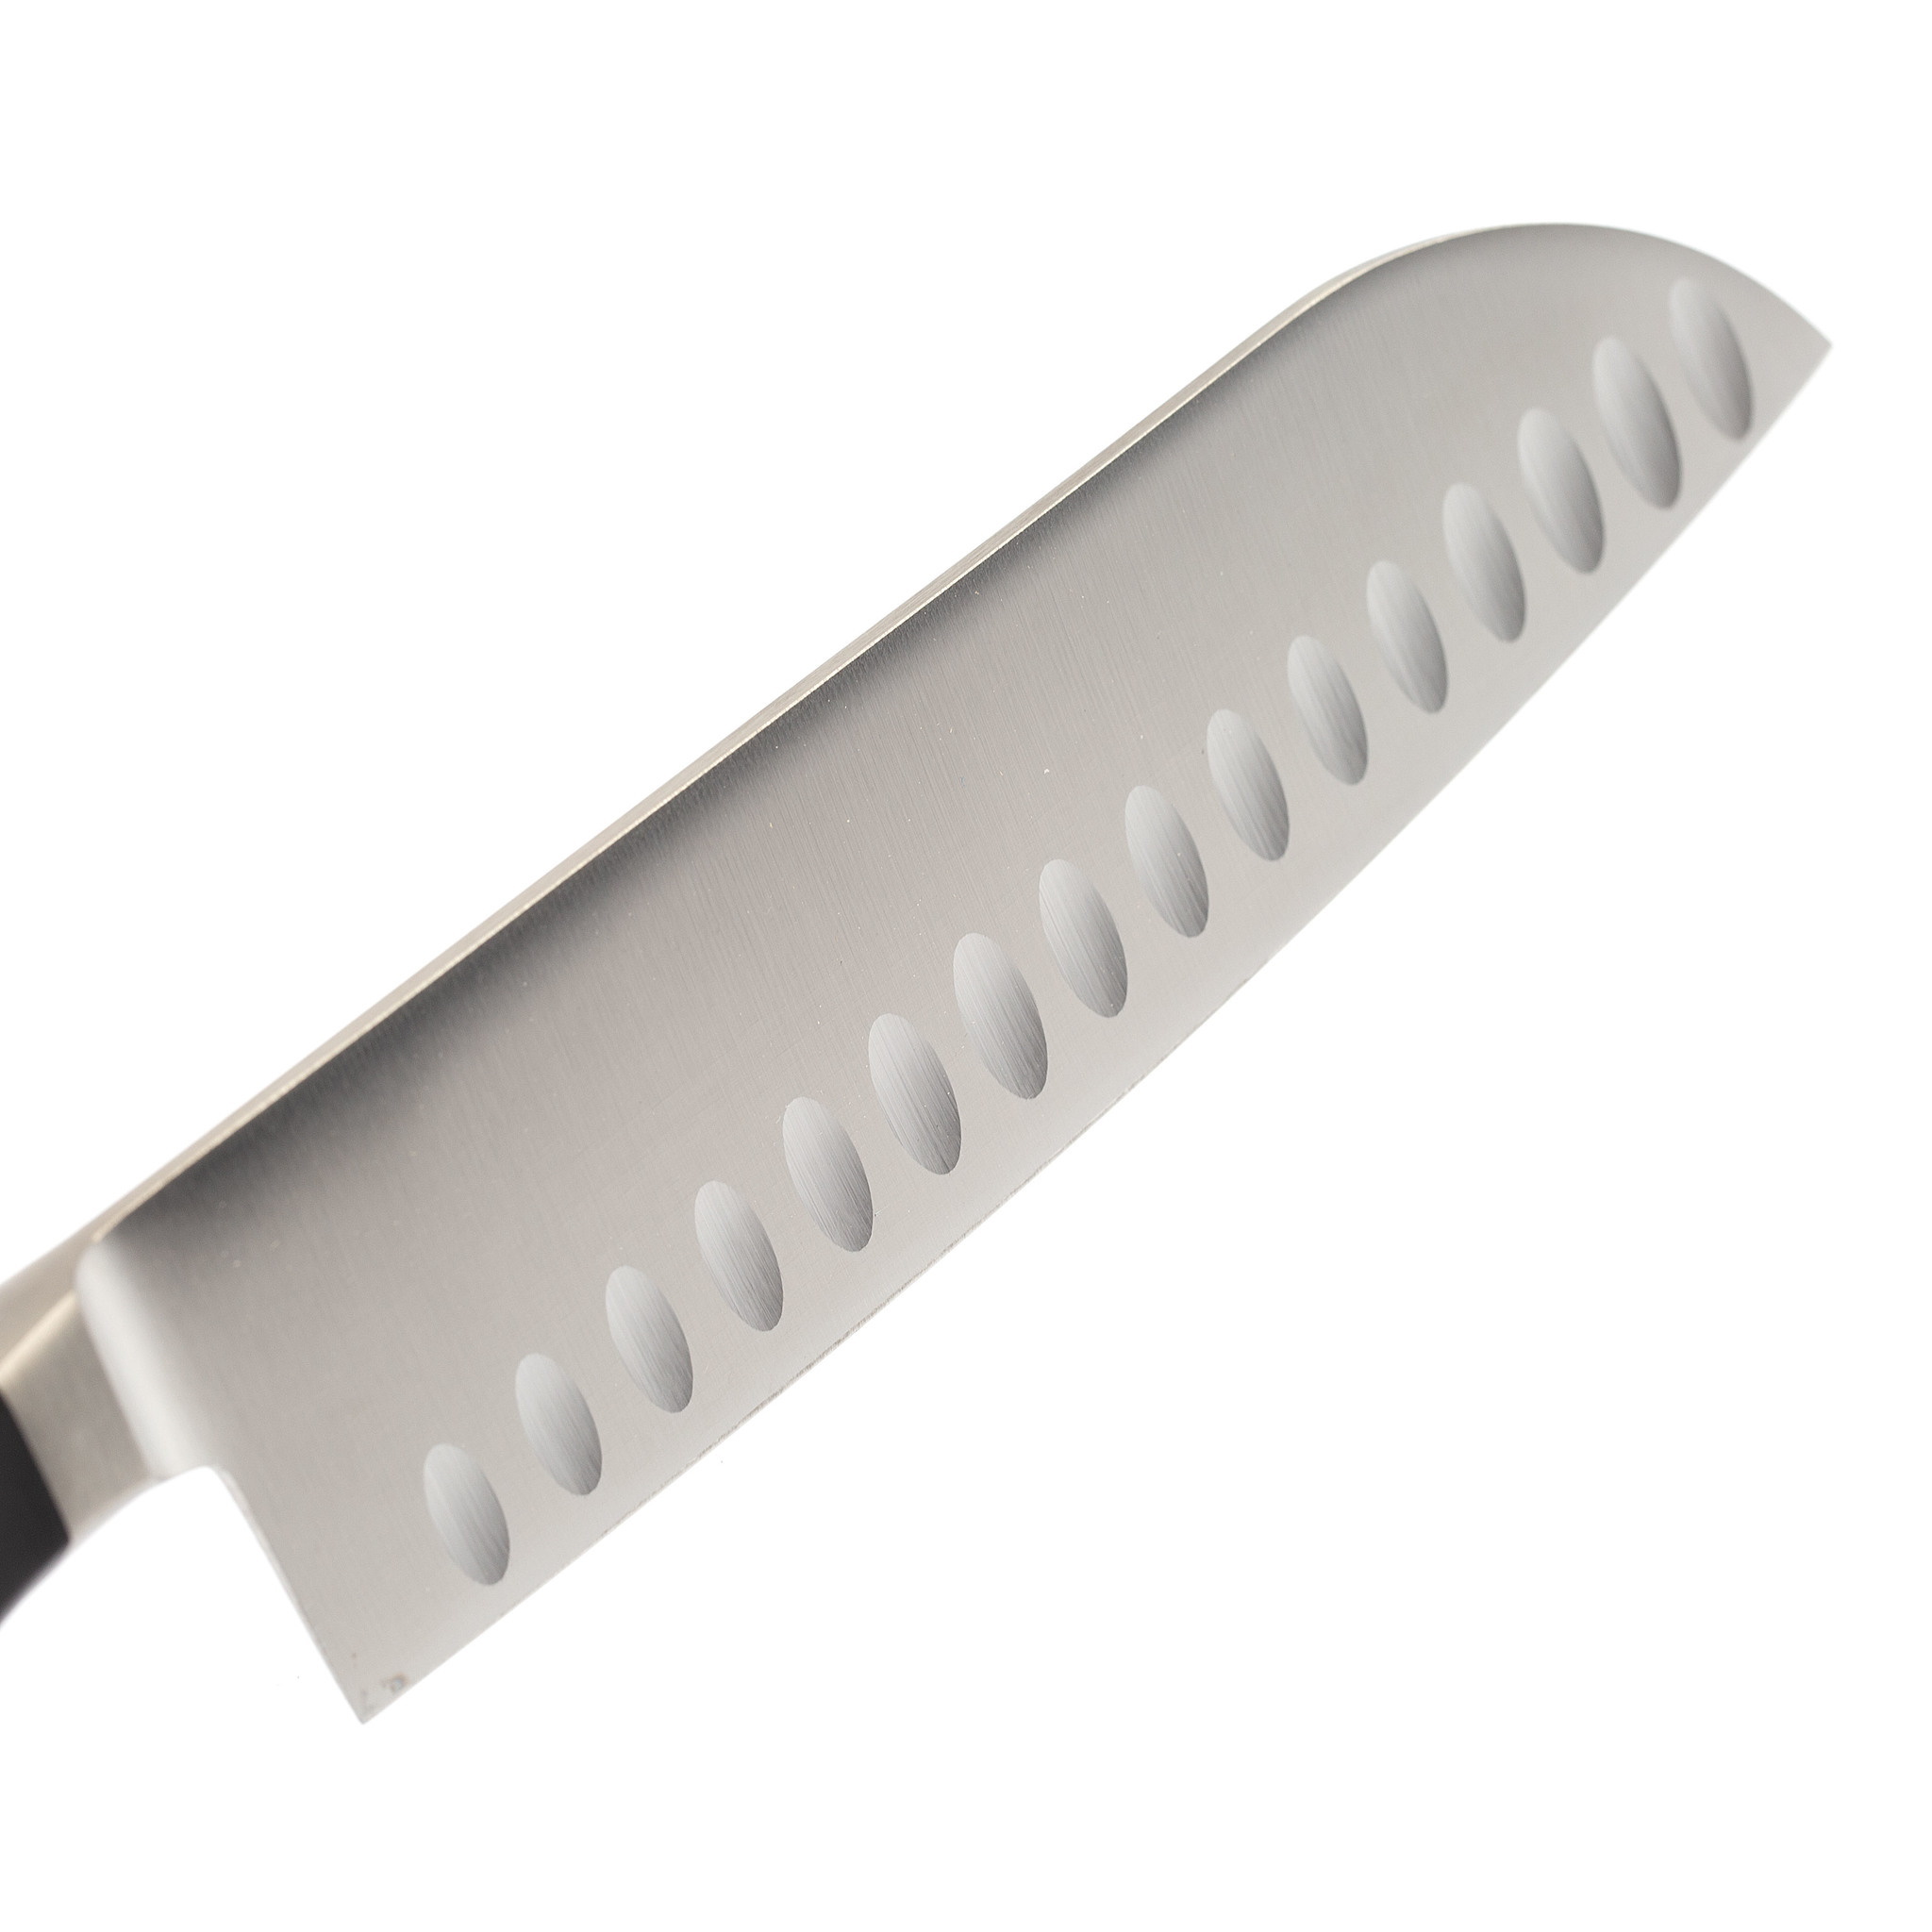 Нож поварской Tramontina Century 17.5 см от Ножиков